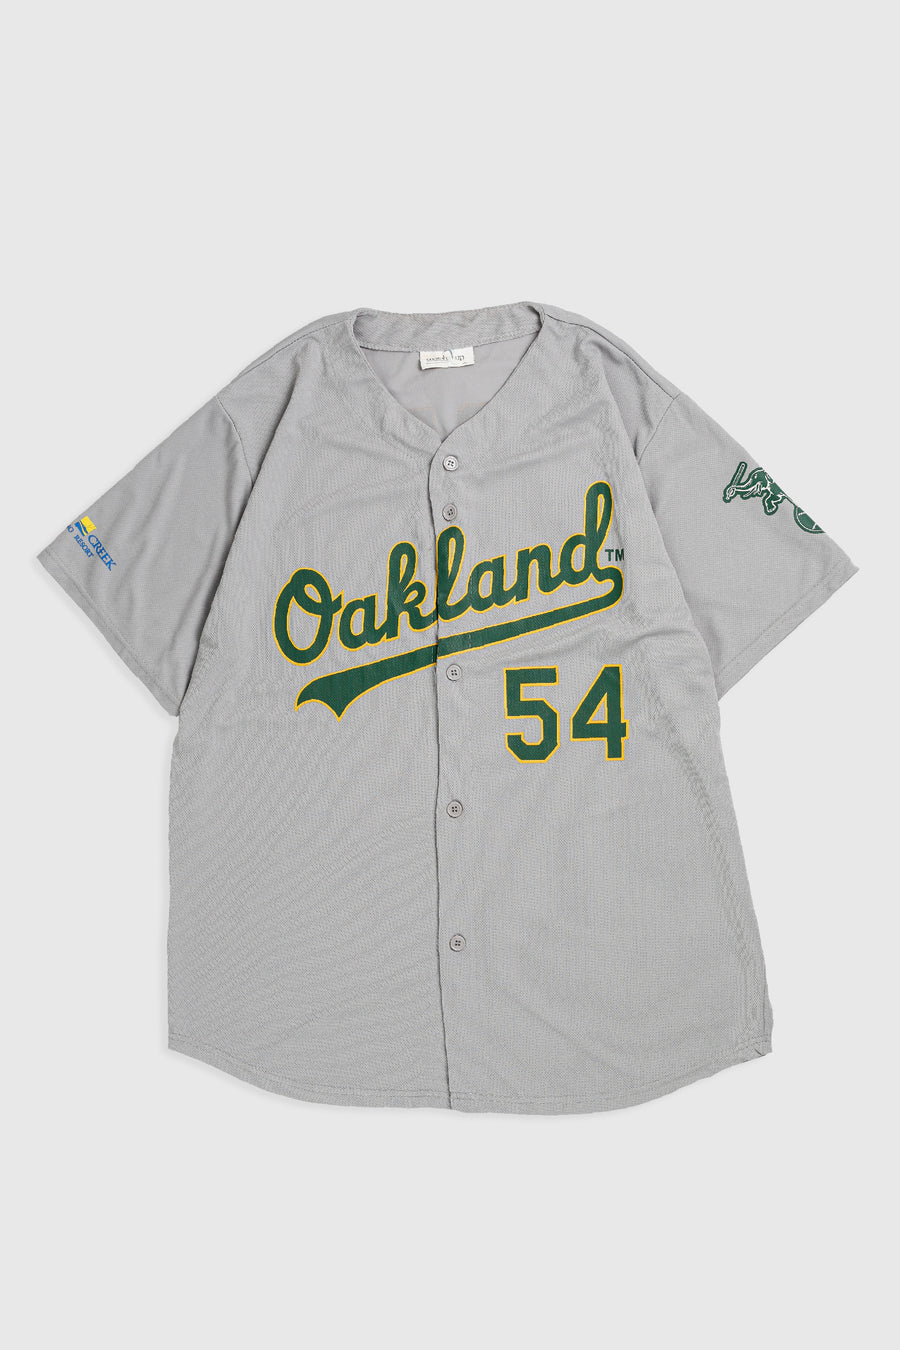 Vintage Oakland Athletics Baseball Jersey - XXL